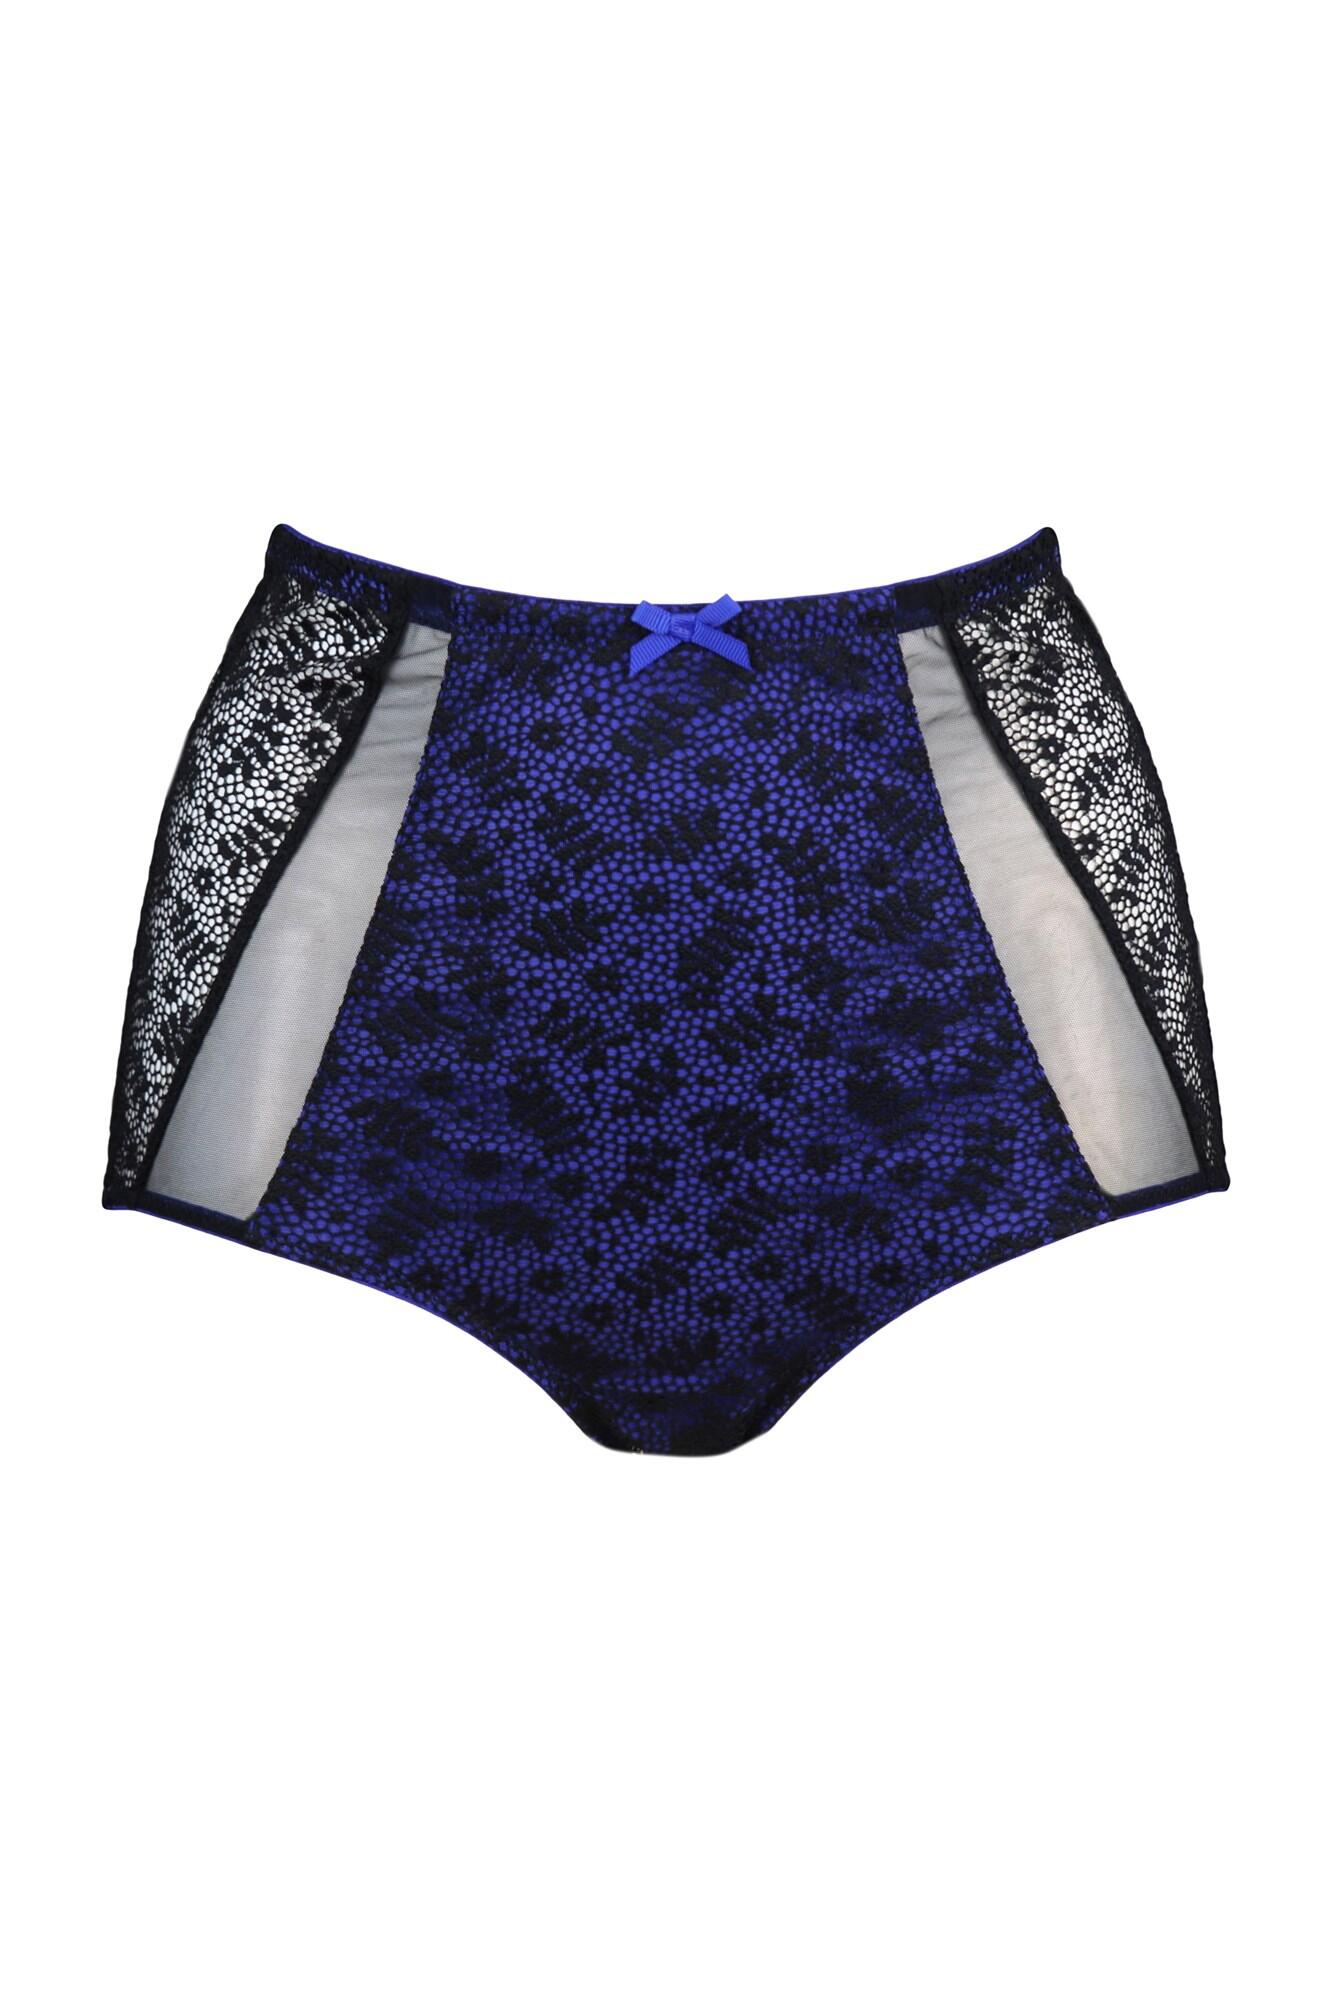 Femmes Lingerie en cuir Culotte Shorts Slips Zipper Underwear Knicker String 